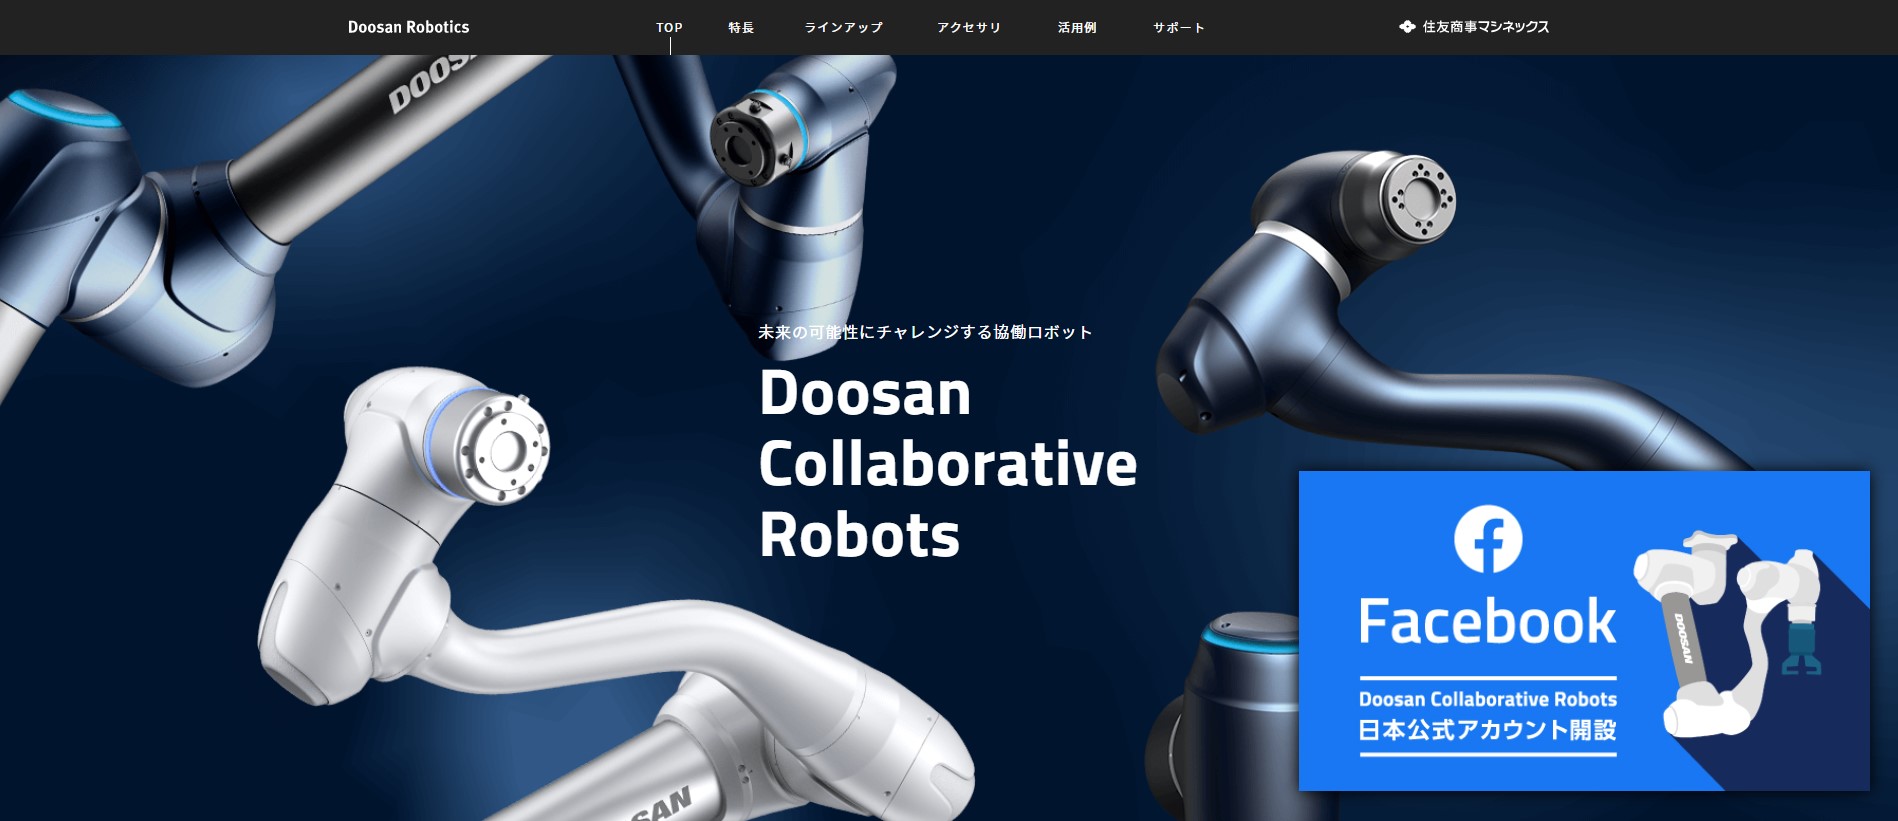 Doosan
Collaborative
Robotsのキャプチャ